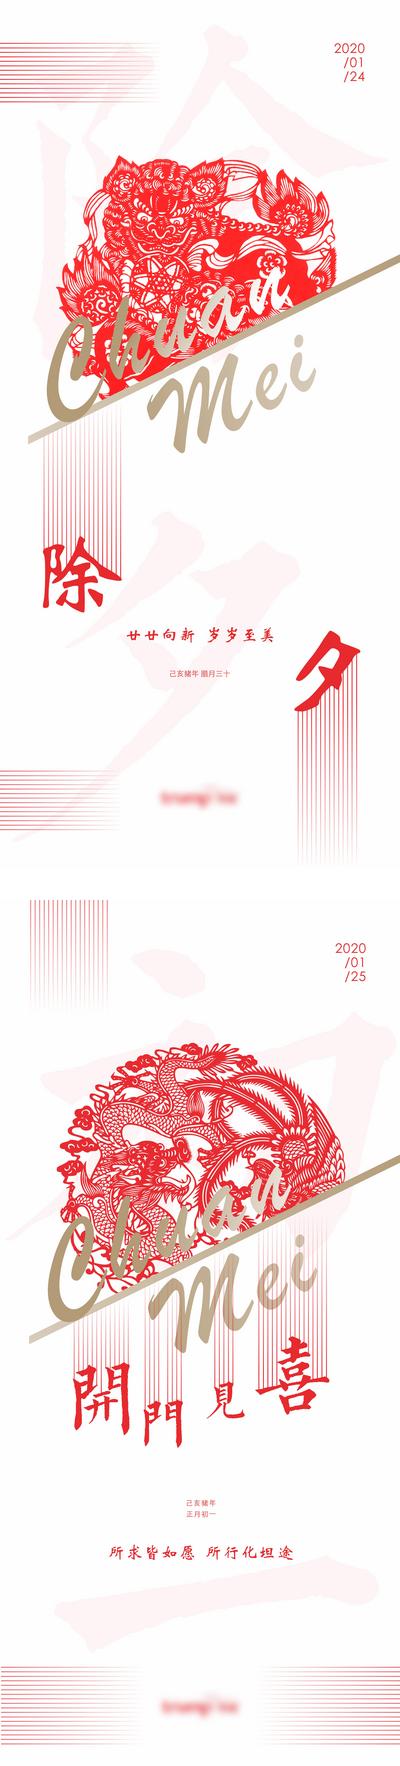 南门网 海报 地产 中国传统节日 春节 除夕 高端 红白 窗花 系列